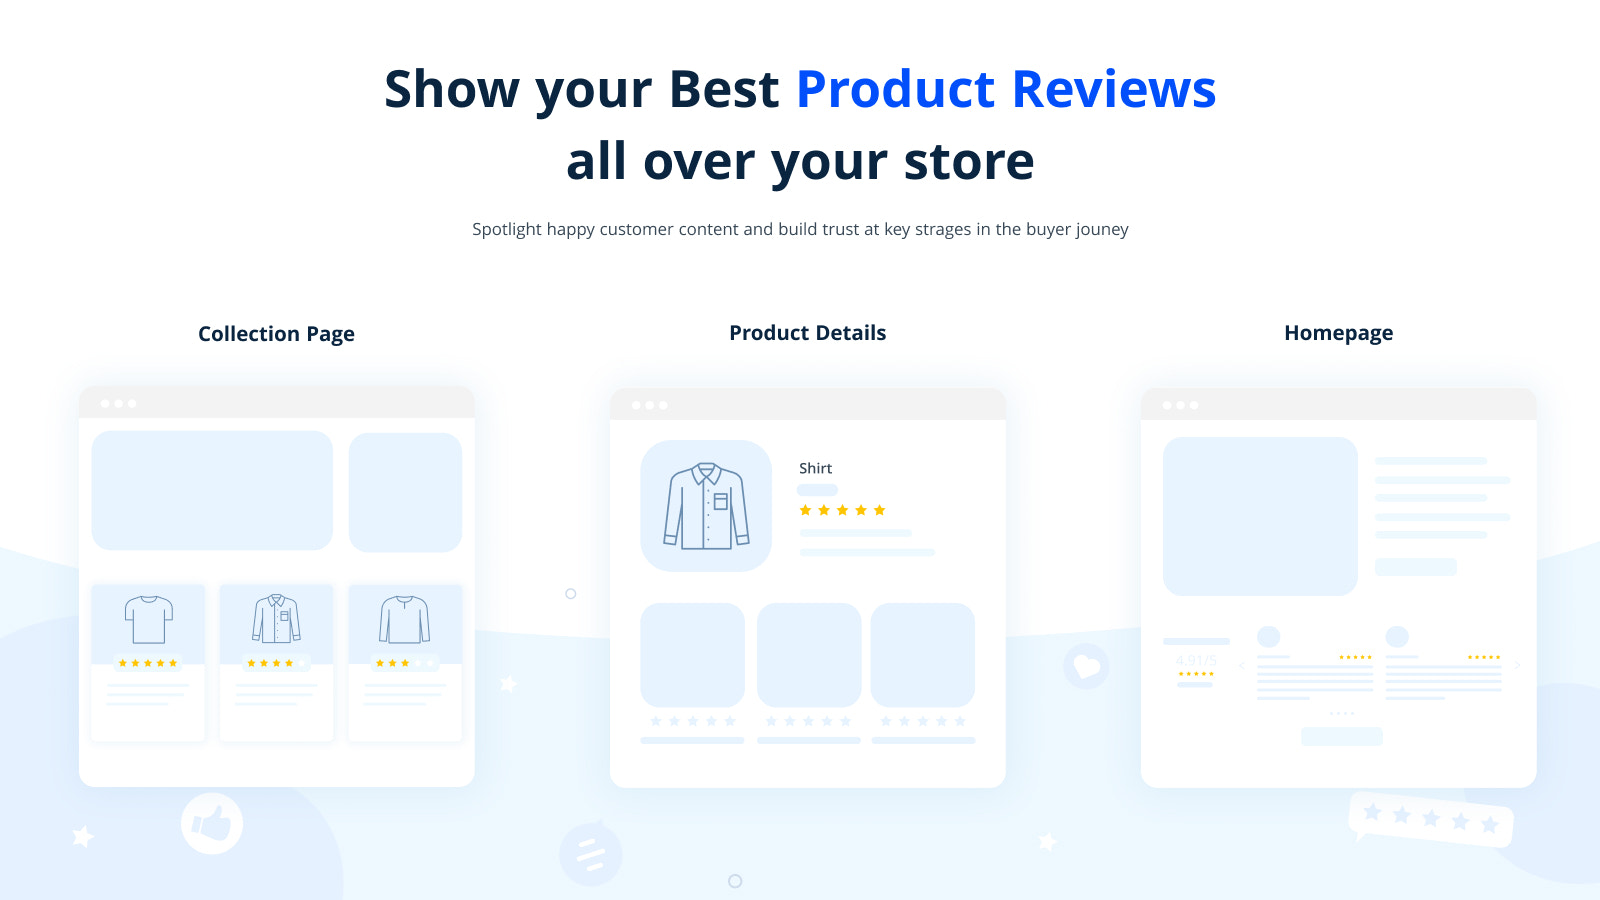 Vis dine bedste produktanmeldelser over hele din butik